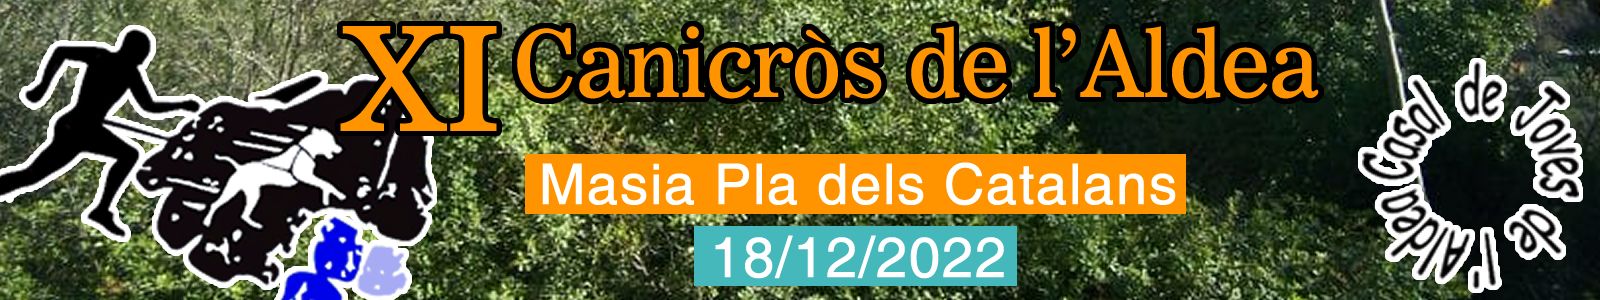 Canicross de L’Aldea - L’Aldea, 18/12/2022